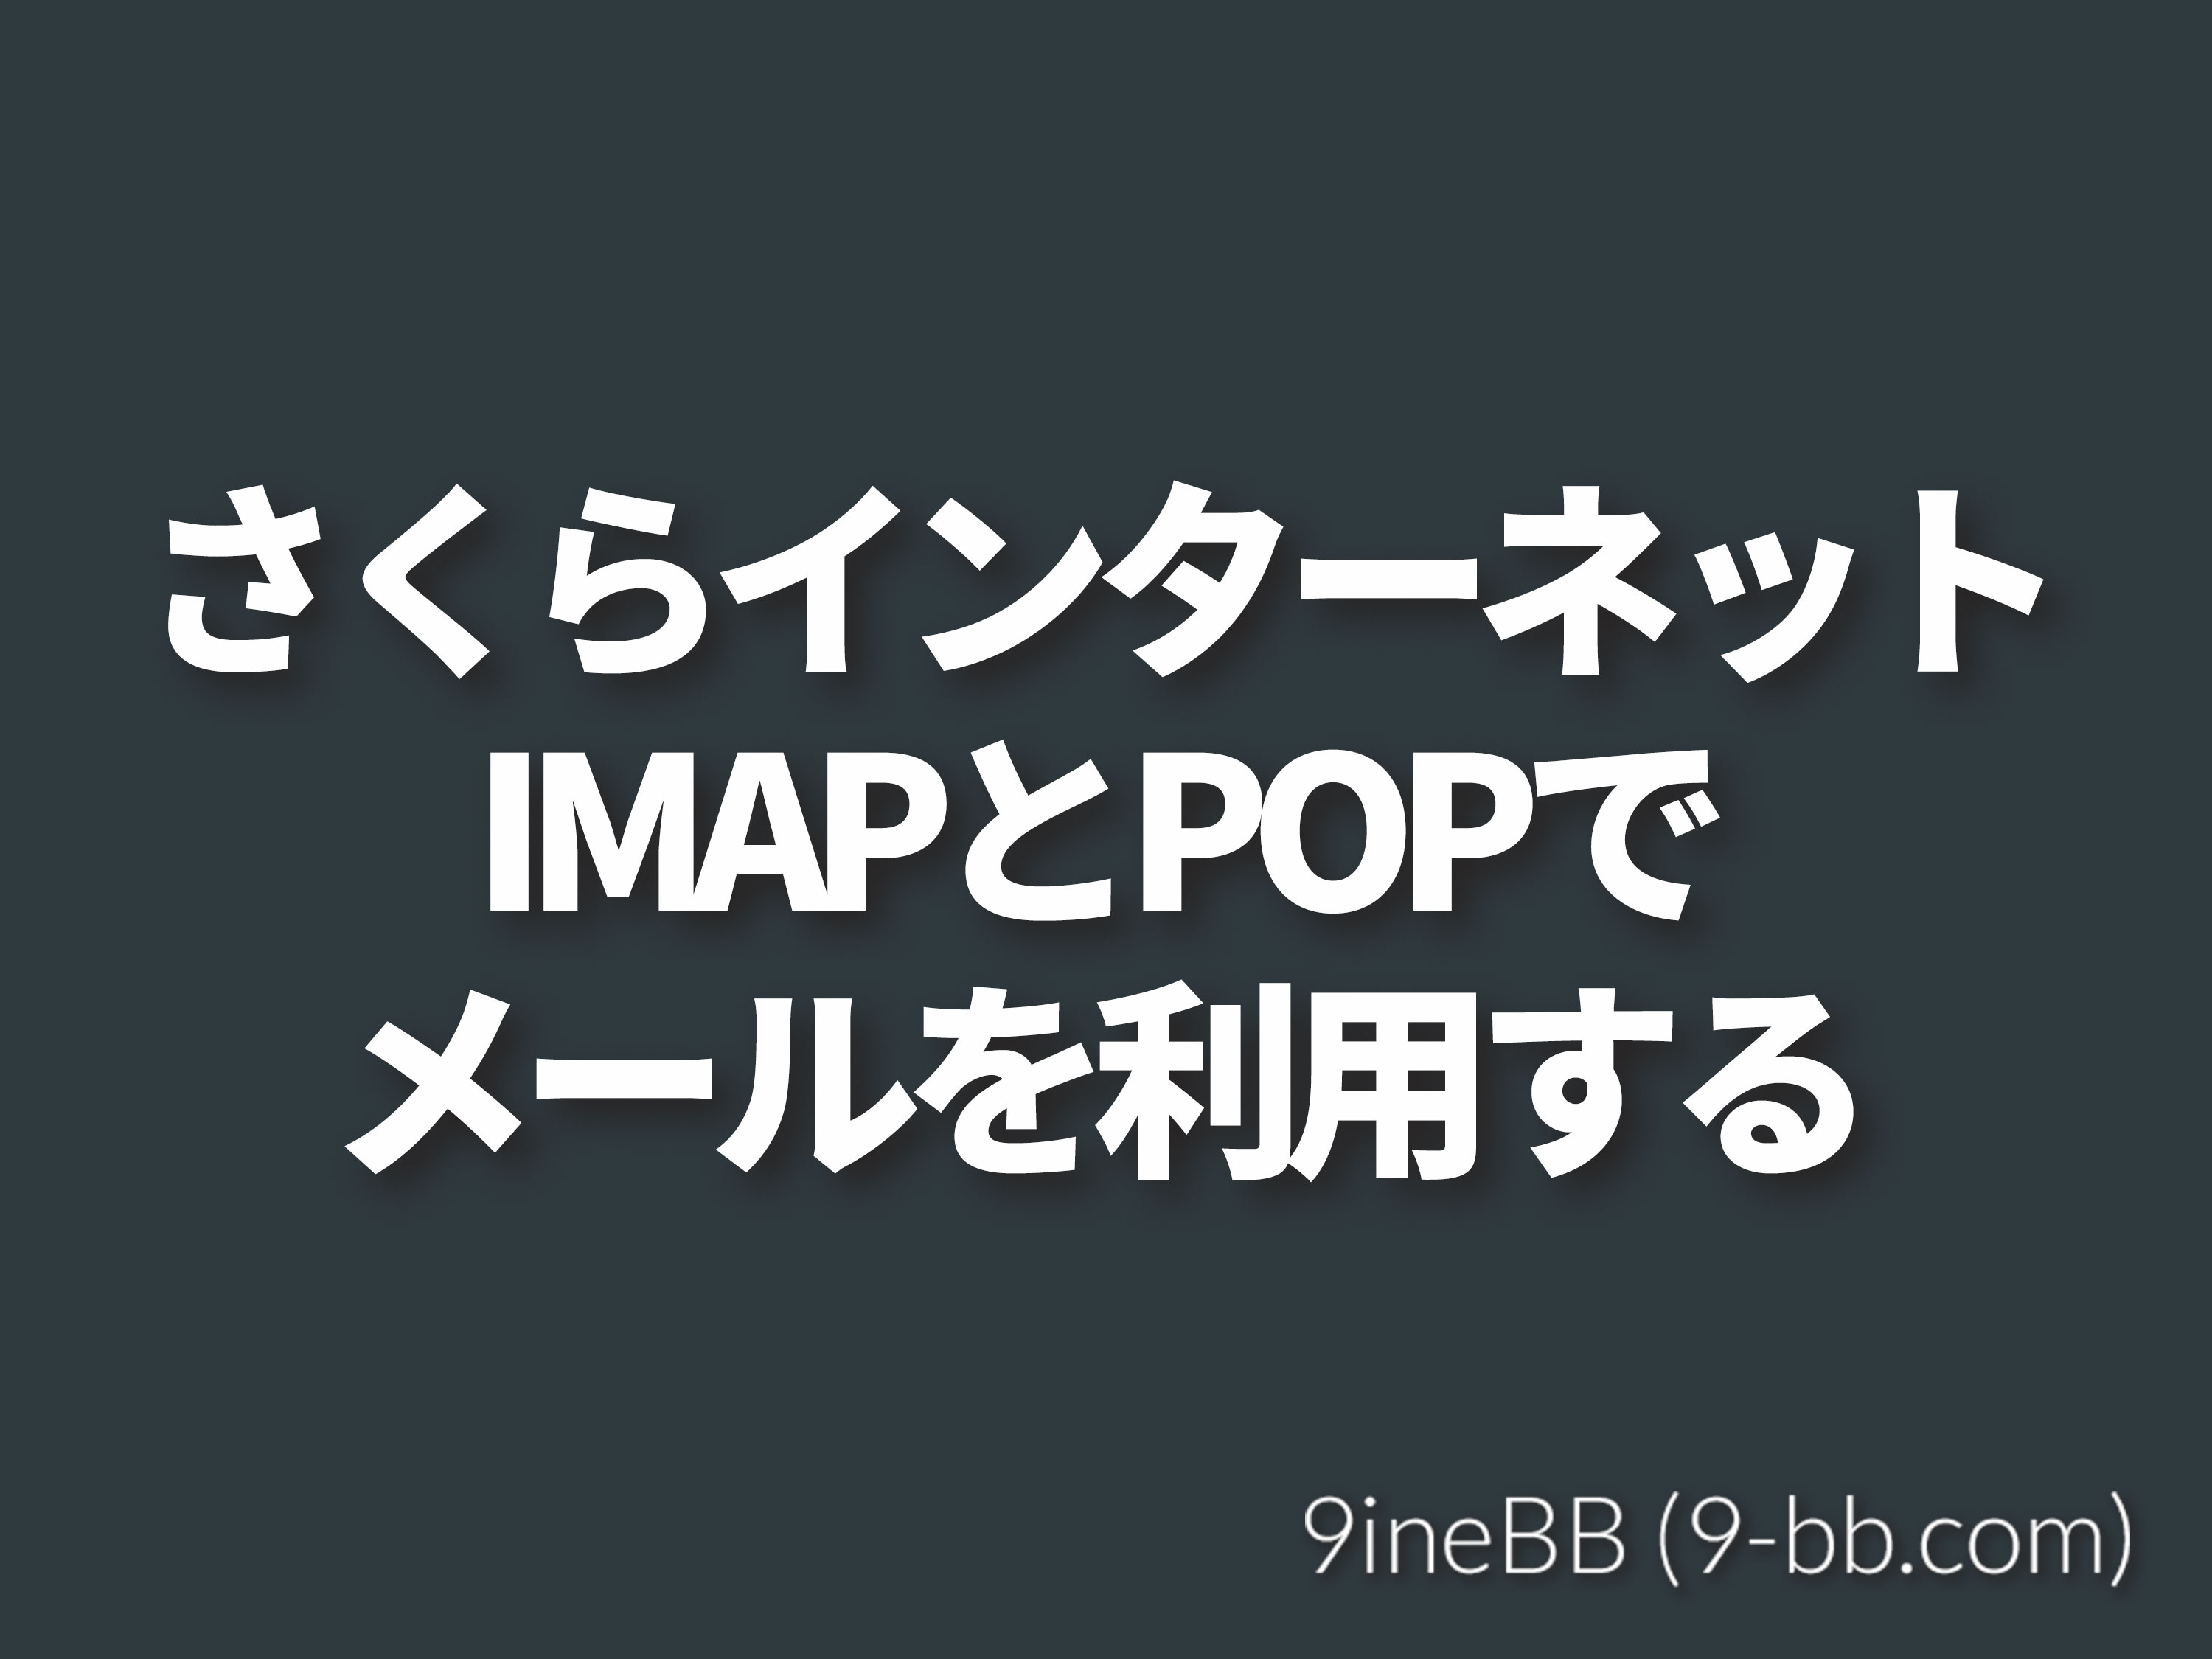 さくらインターネットのメールをimap Pop3で利用する手順 9inebb